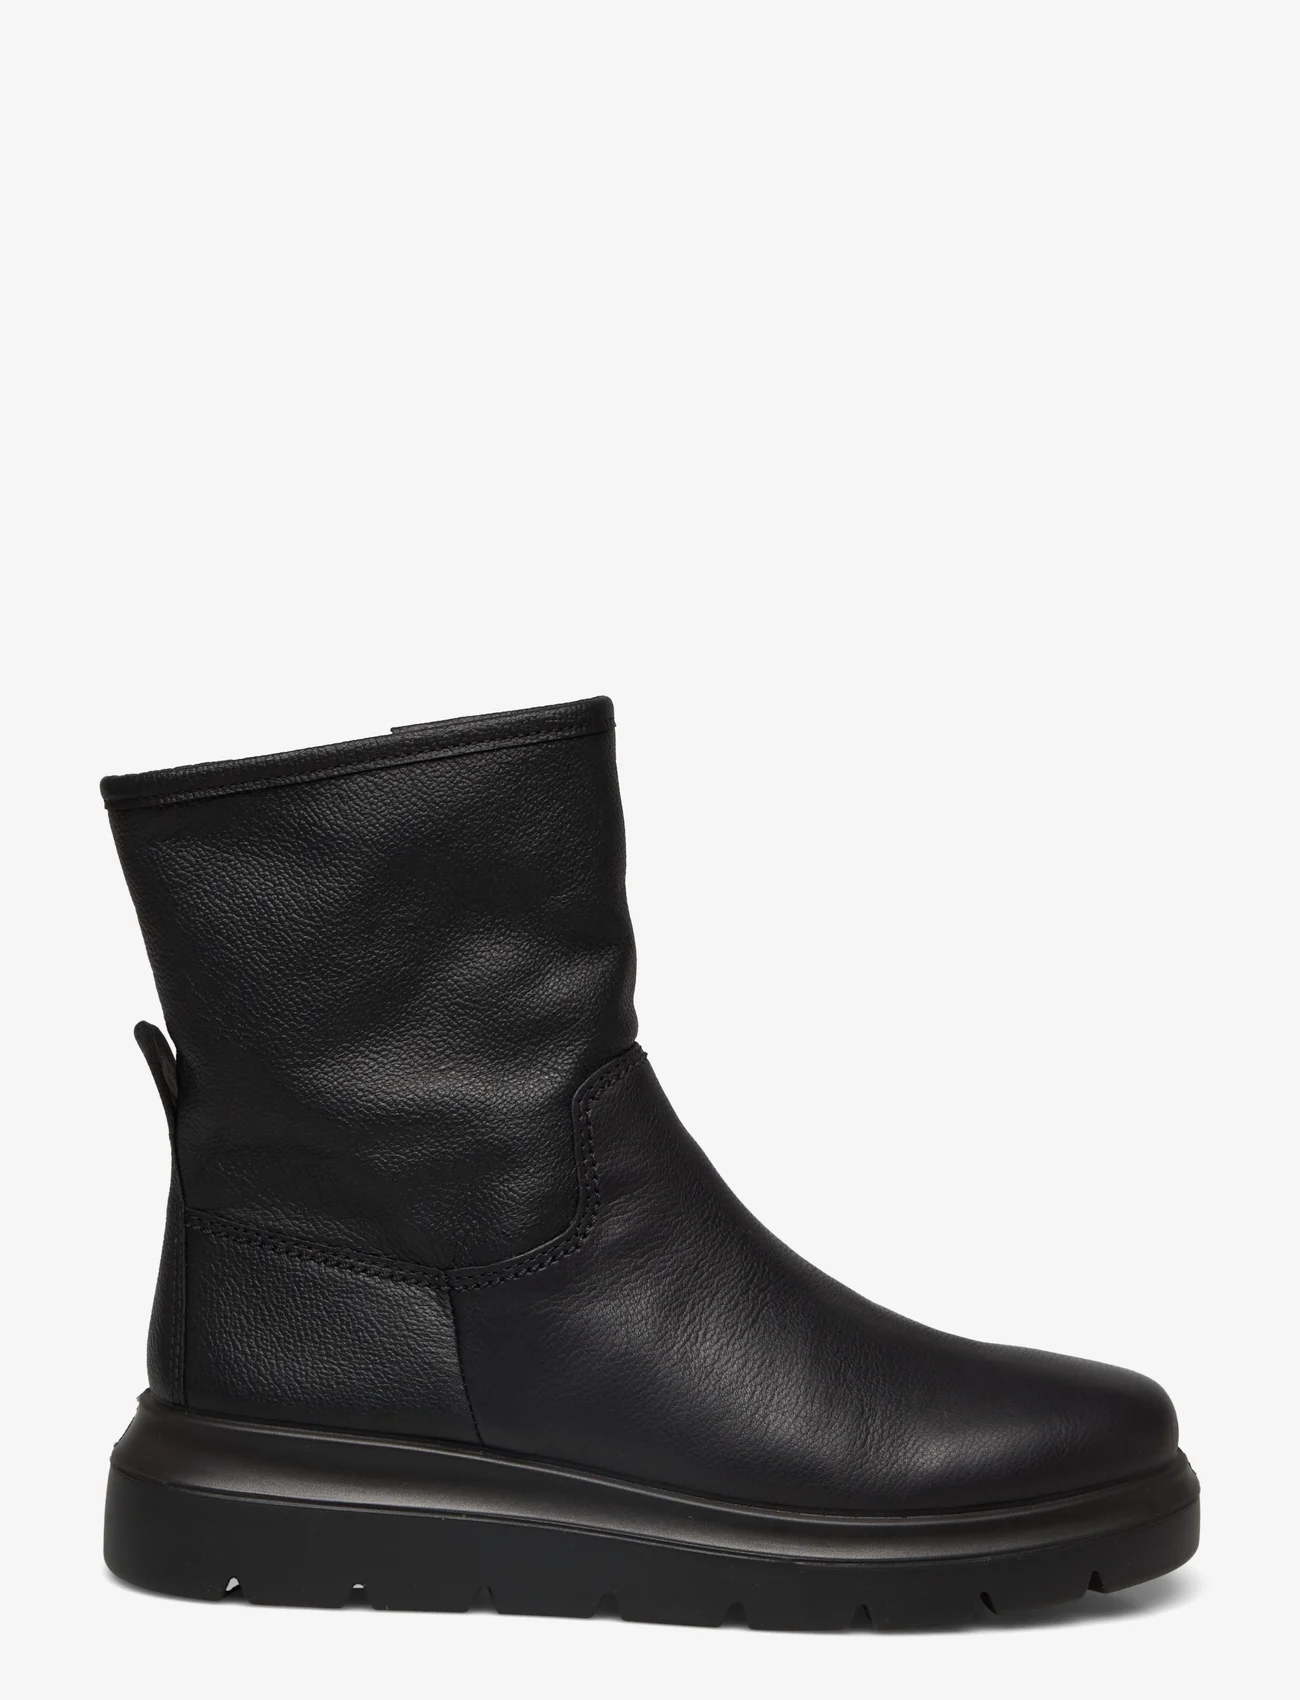 ECCO - NOUVELLE - ankle boots - black - 1